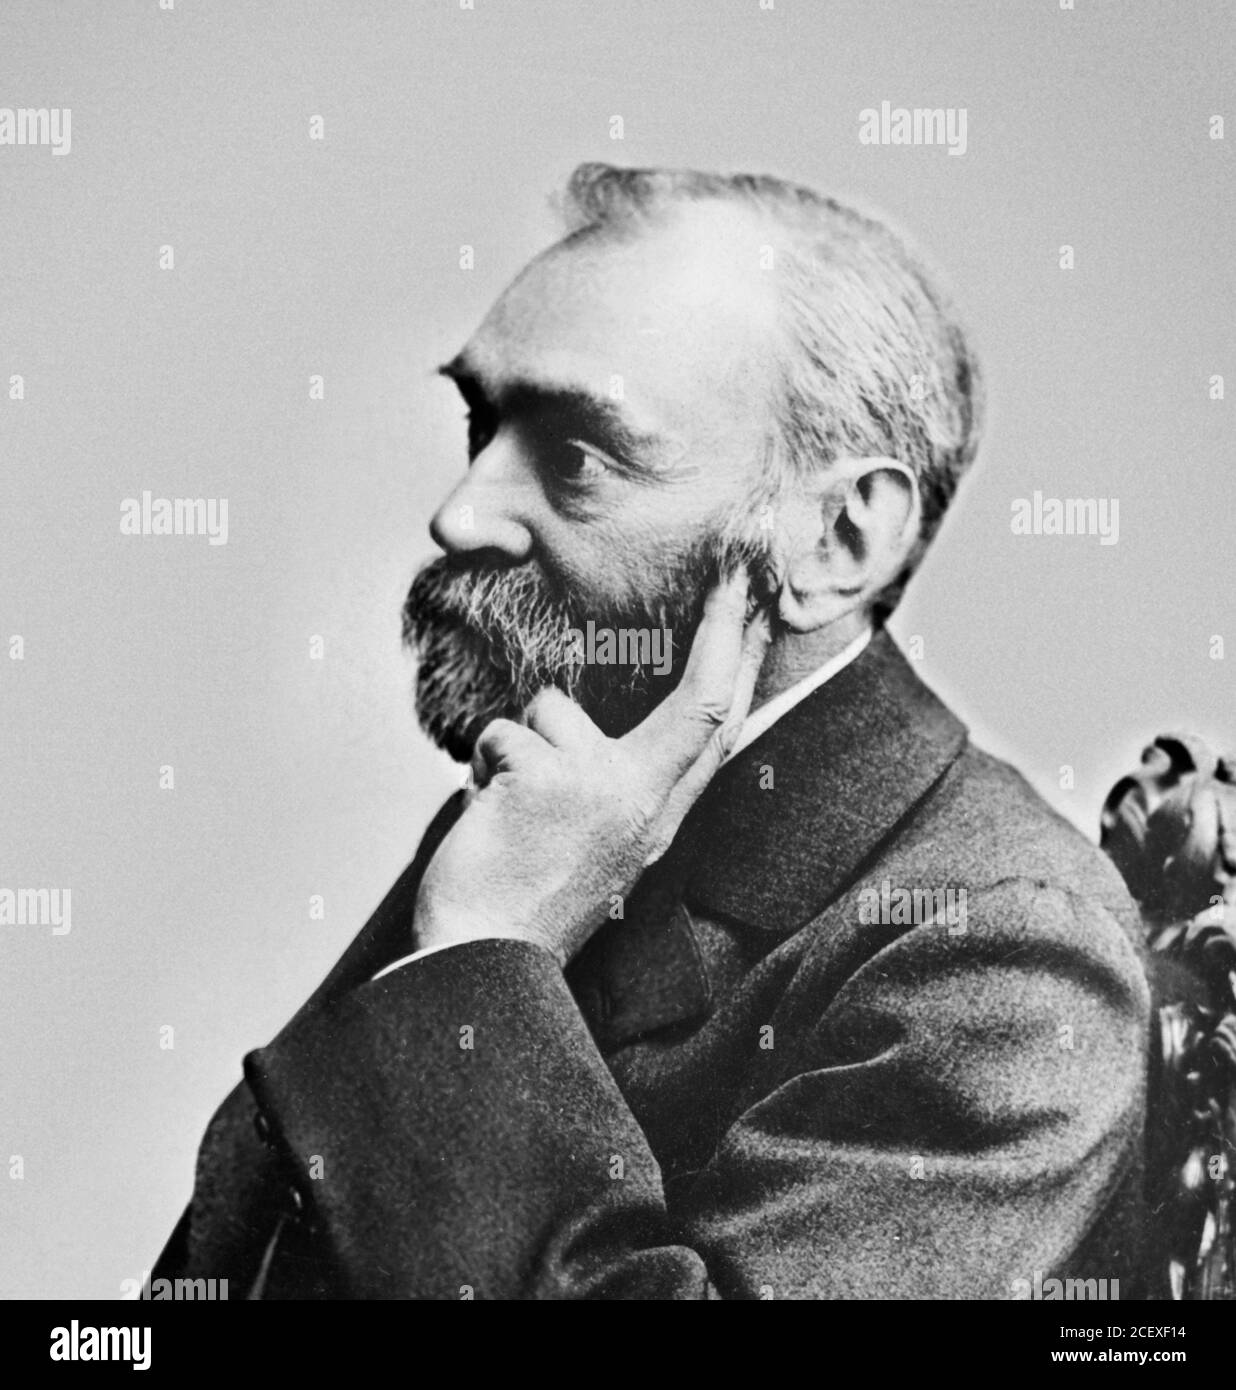 Alfred Nobel, retrato de Gösta Florman, fecha desconocida. Foto de stock